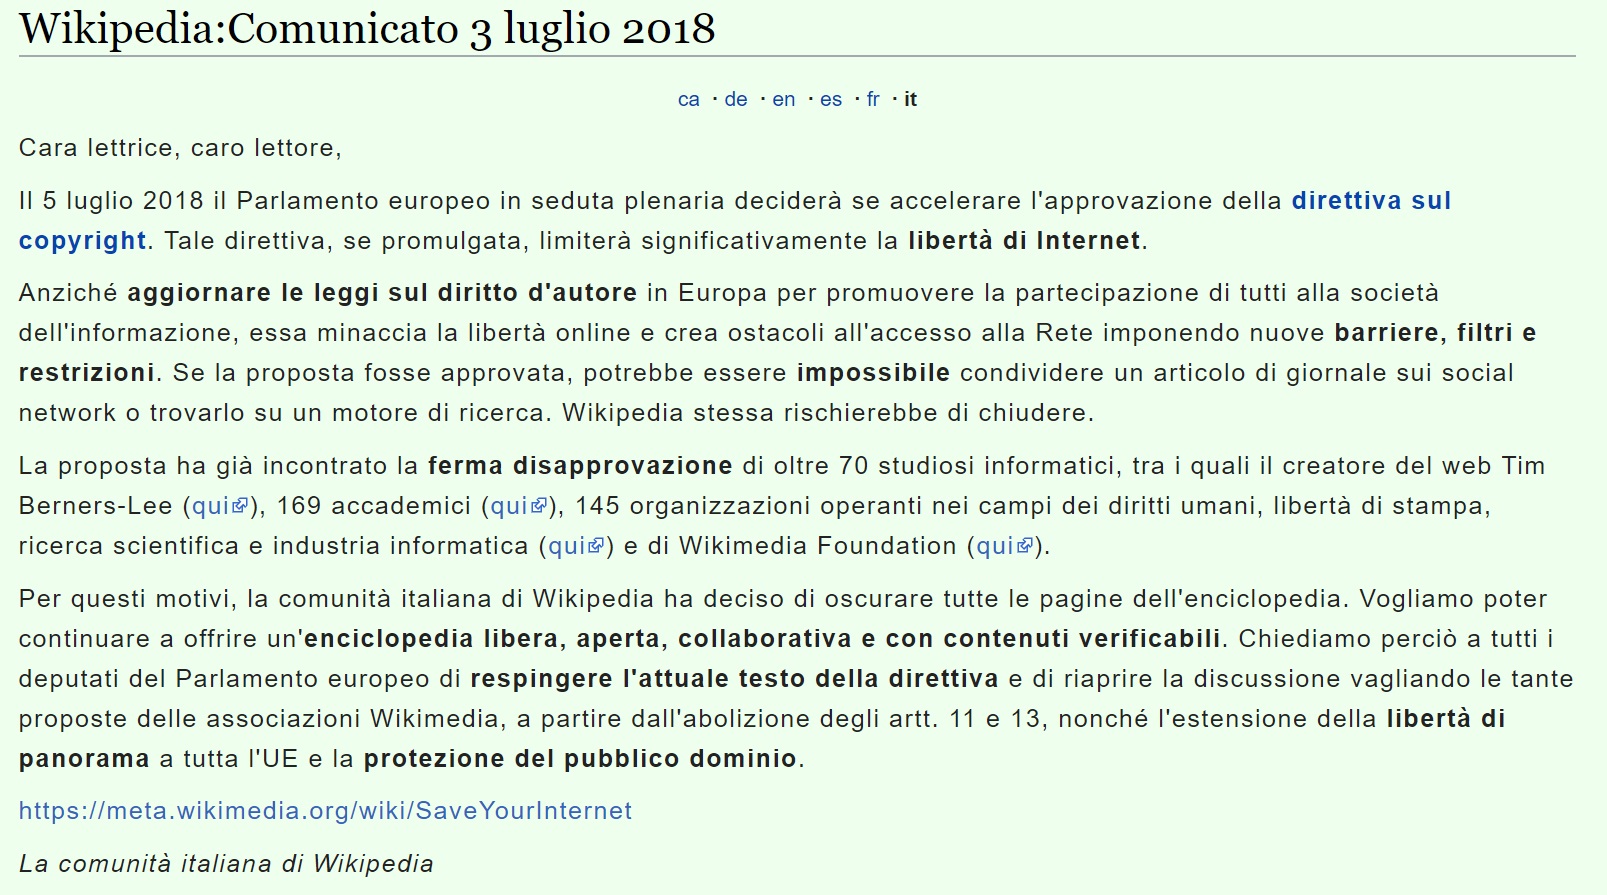 Итальянская Википедия перед голосованием